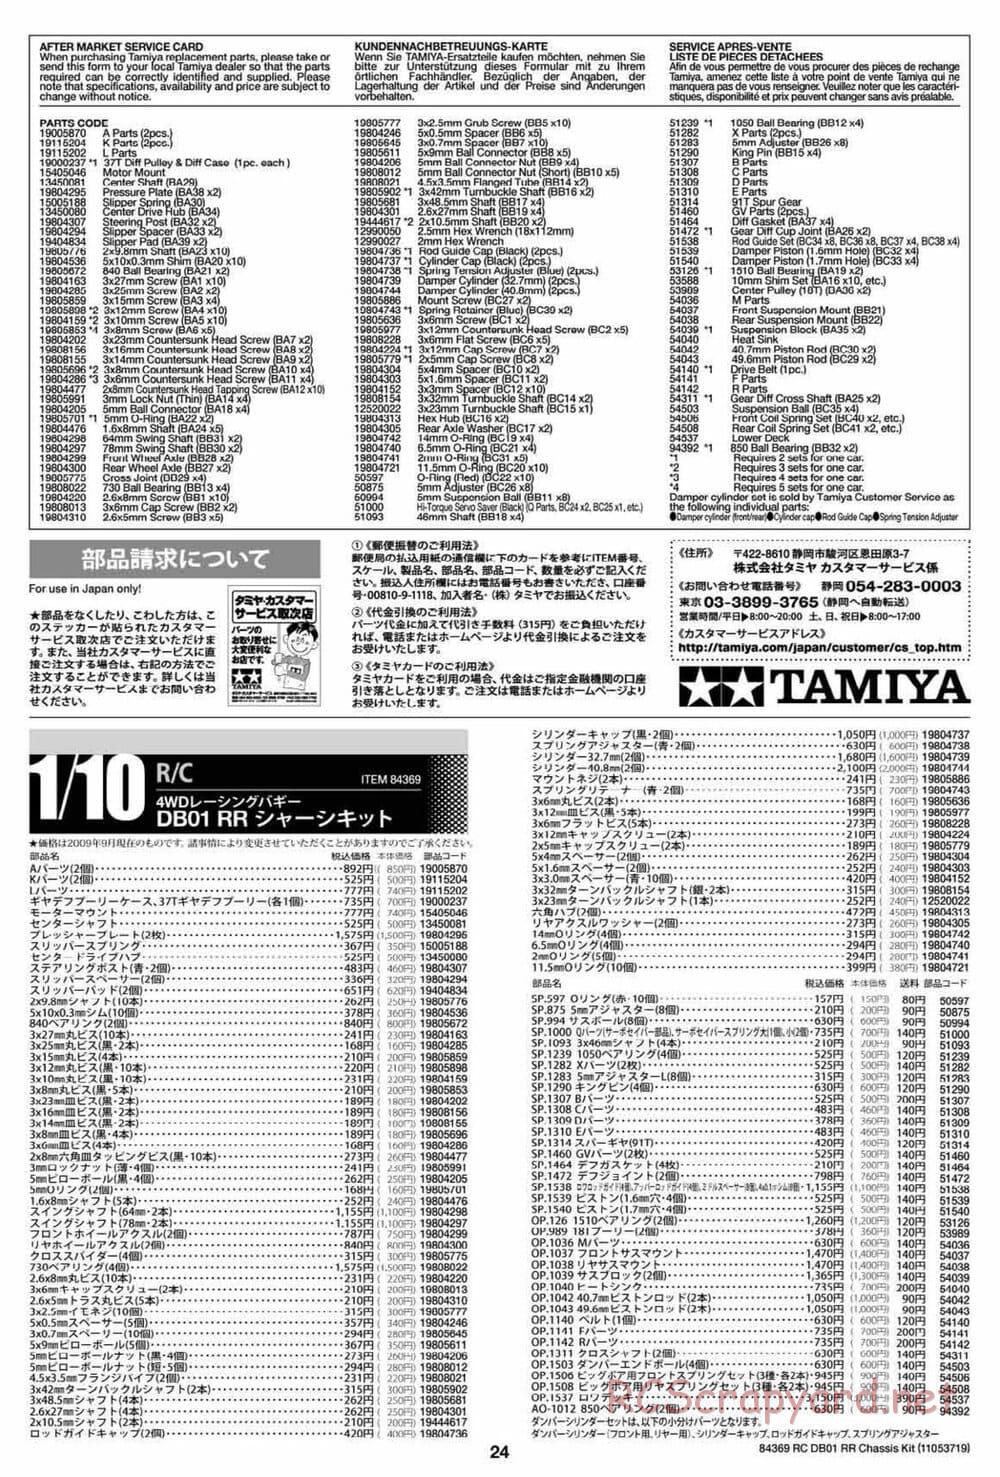 Tamiya - DB-01 RR Chassis - Manual - Page 24